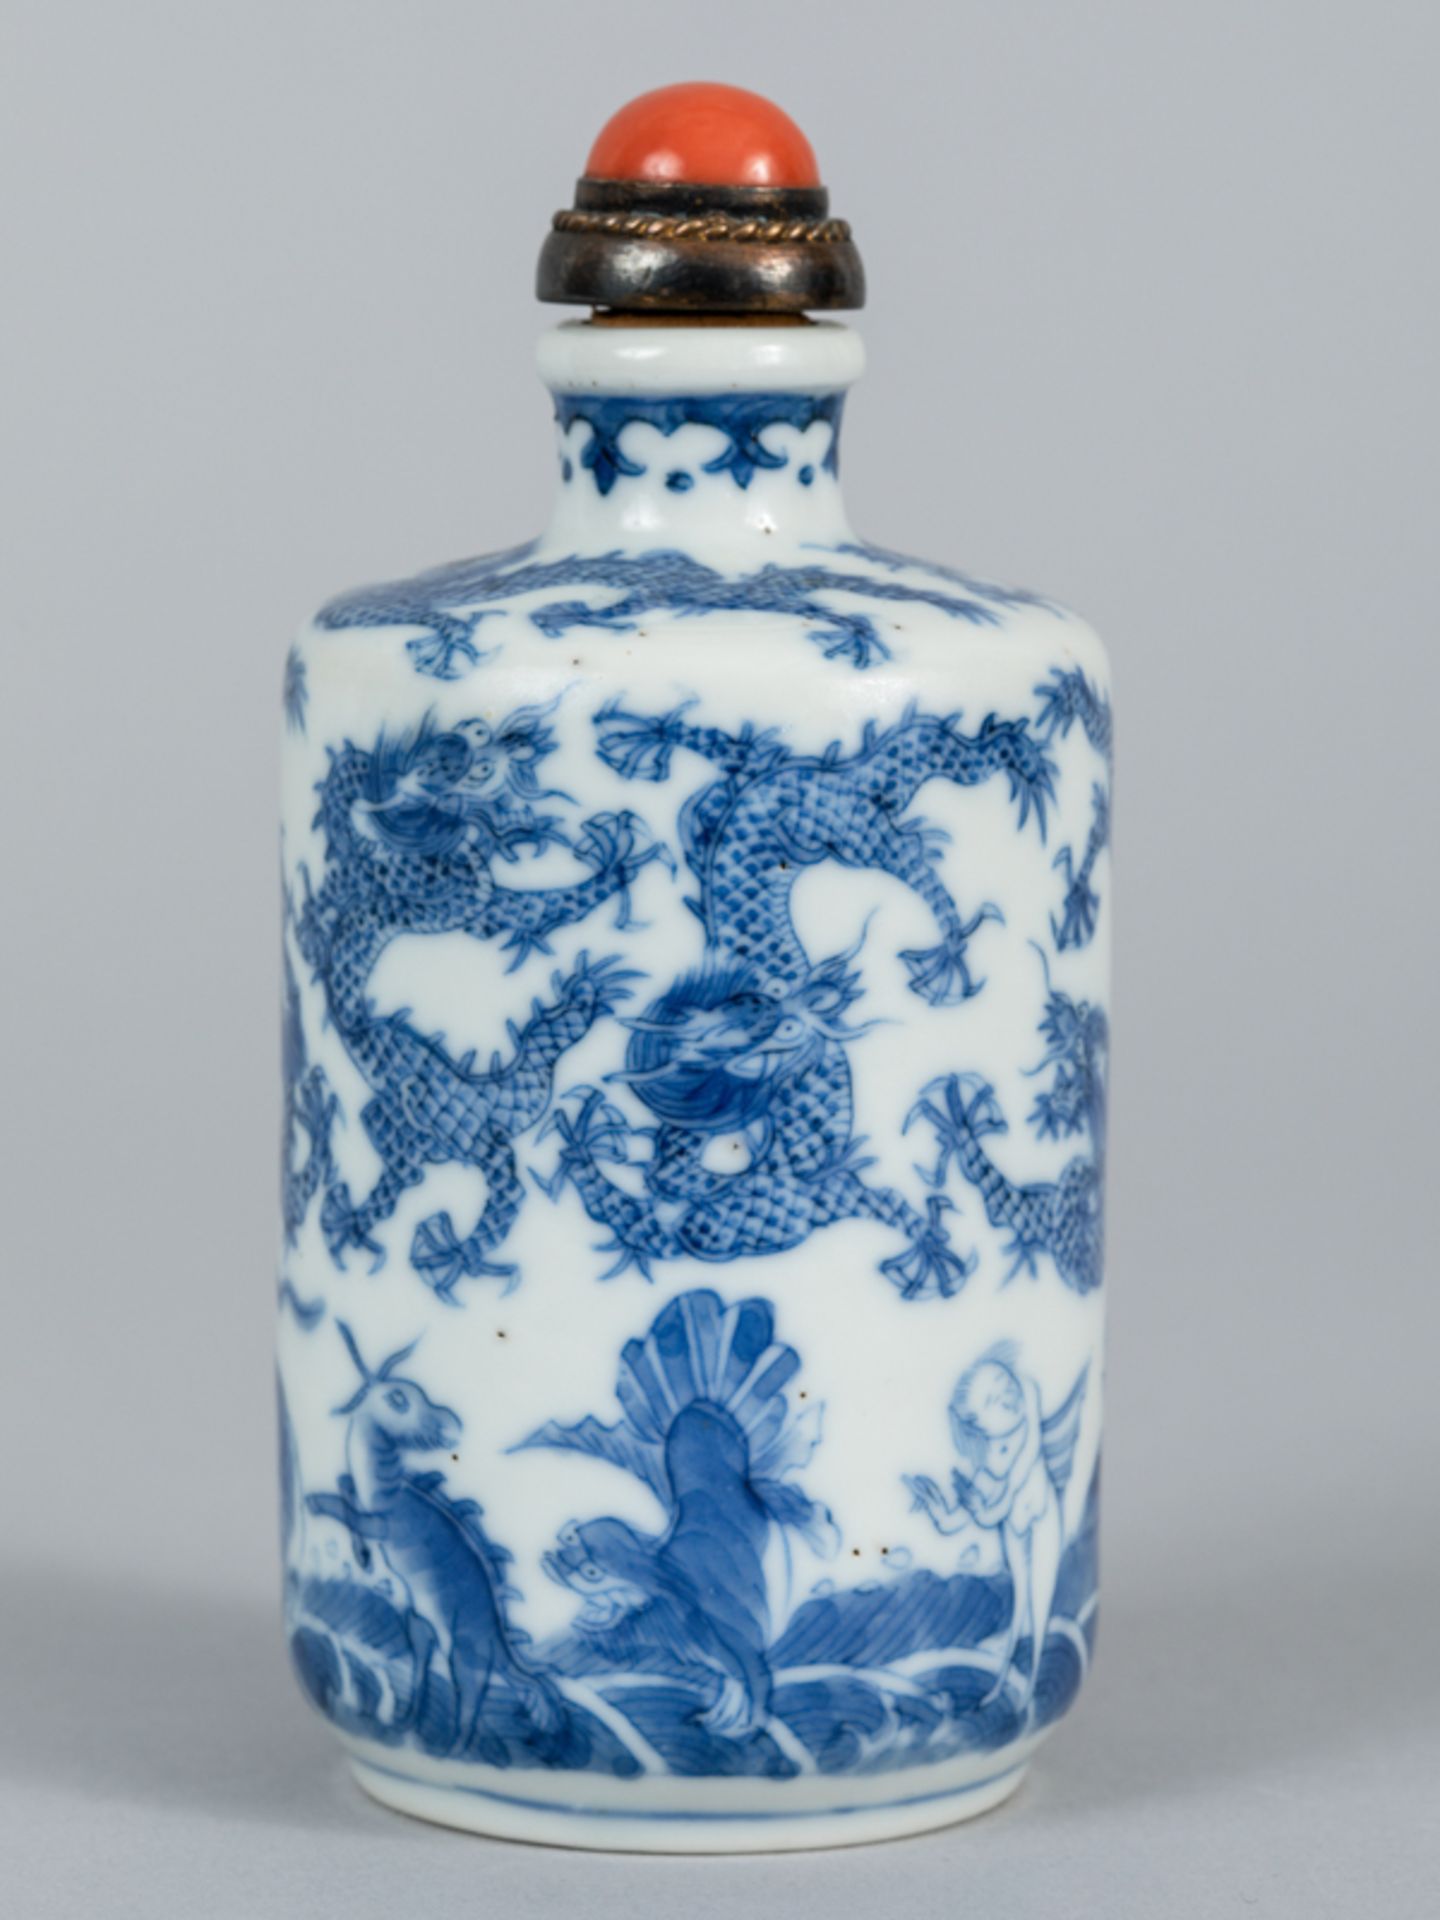 Größere Snuffbottle (Tischflasche) mit Drachen- u. Tier-/Figuren-Dekor; Chien Lung-Periode; China